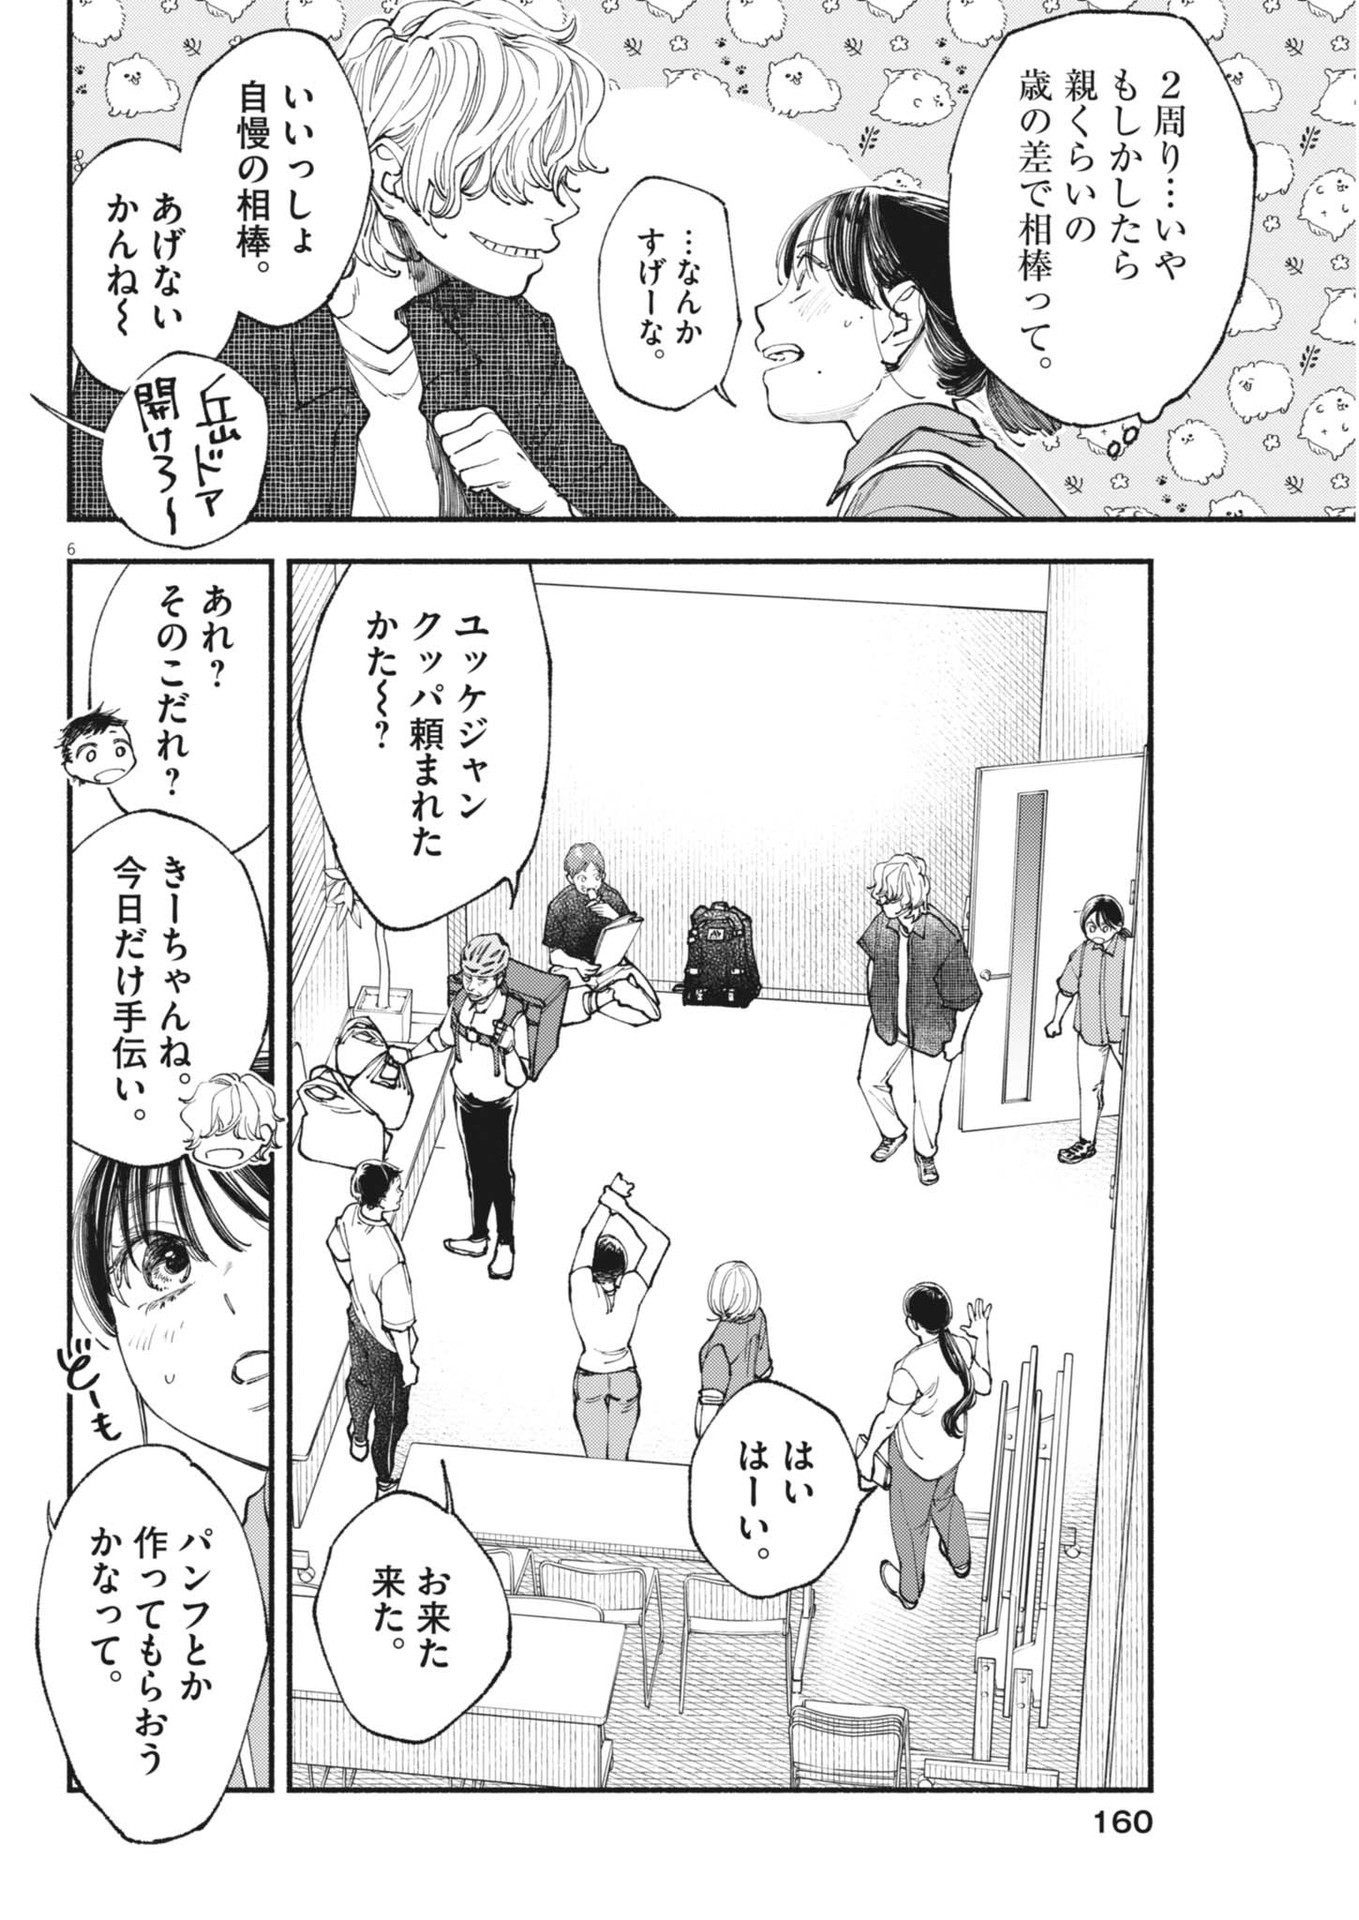 Konoyo wa Tatakau Kachi ga Aru  - Chapter 28 - Page 6